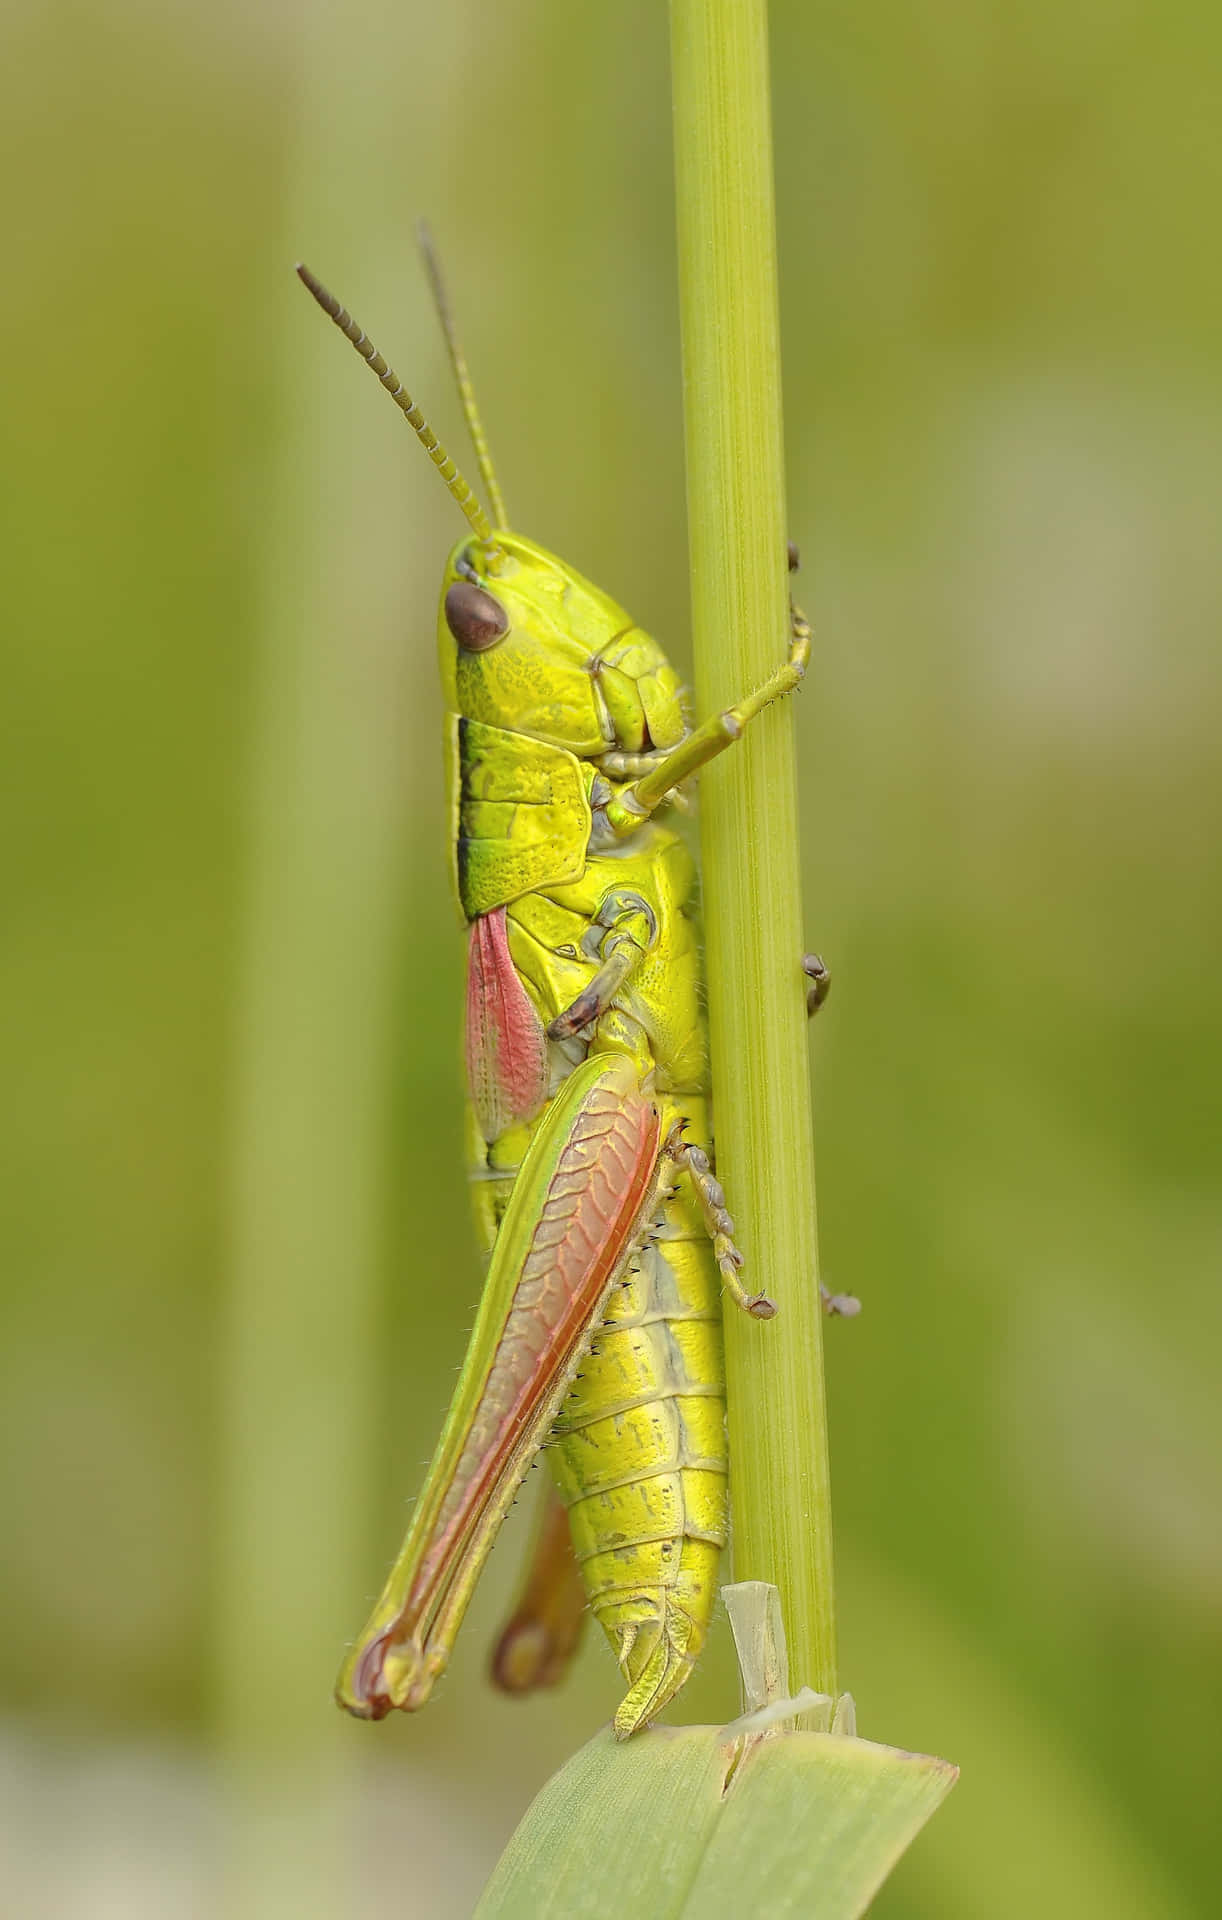 A Stunning Close-up Shot of a Grasshopper